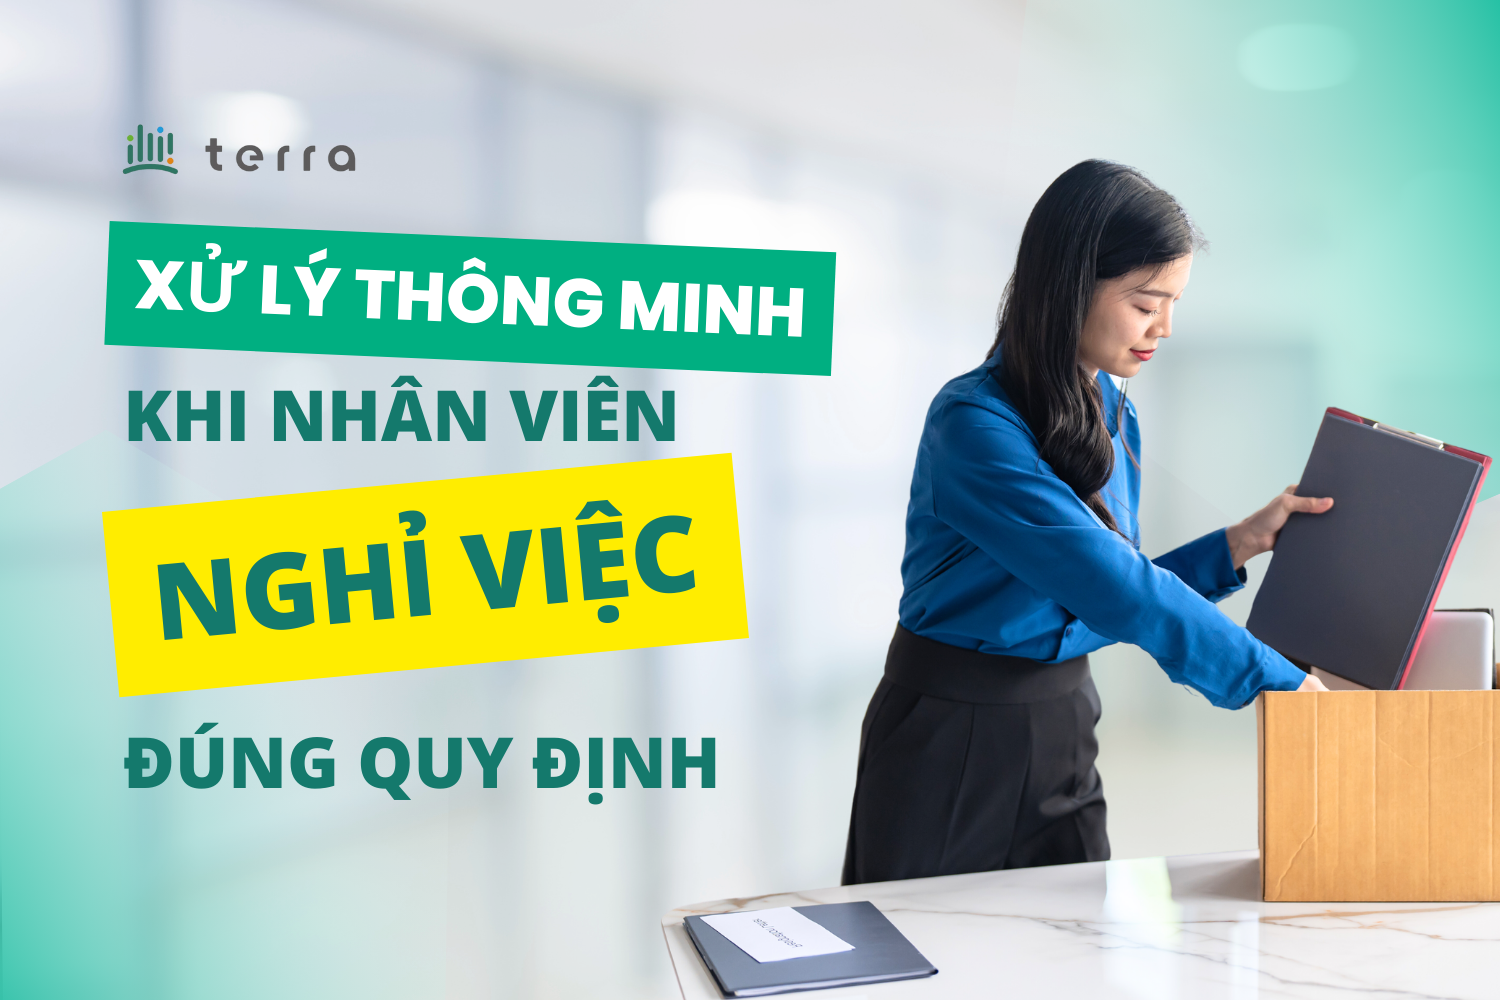 (Tiếng Việt) Xử lý thông minh khi nhân viên nghỉ việc đúng quy định